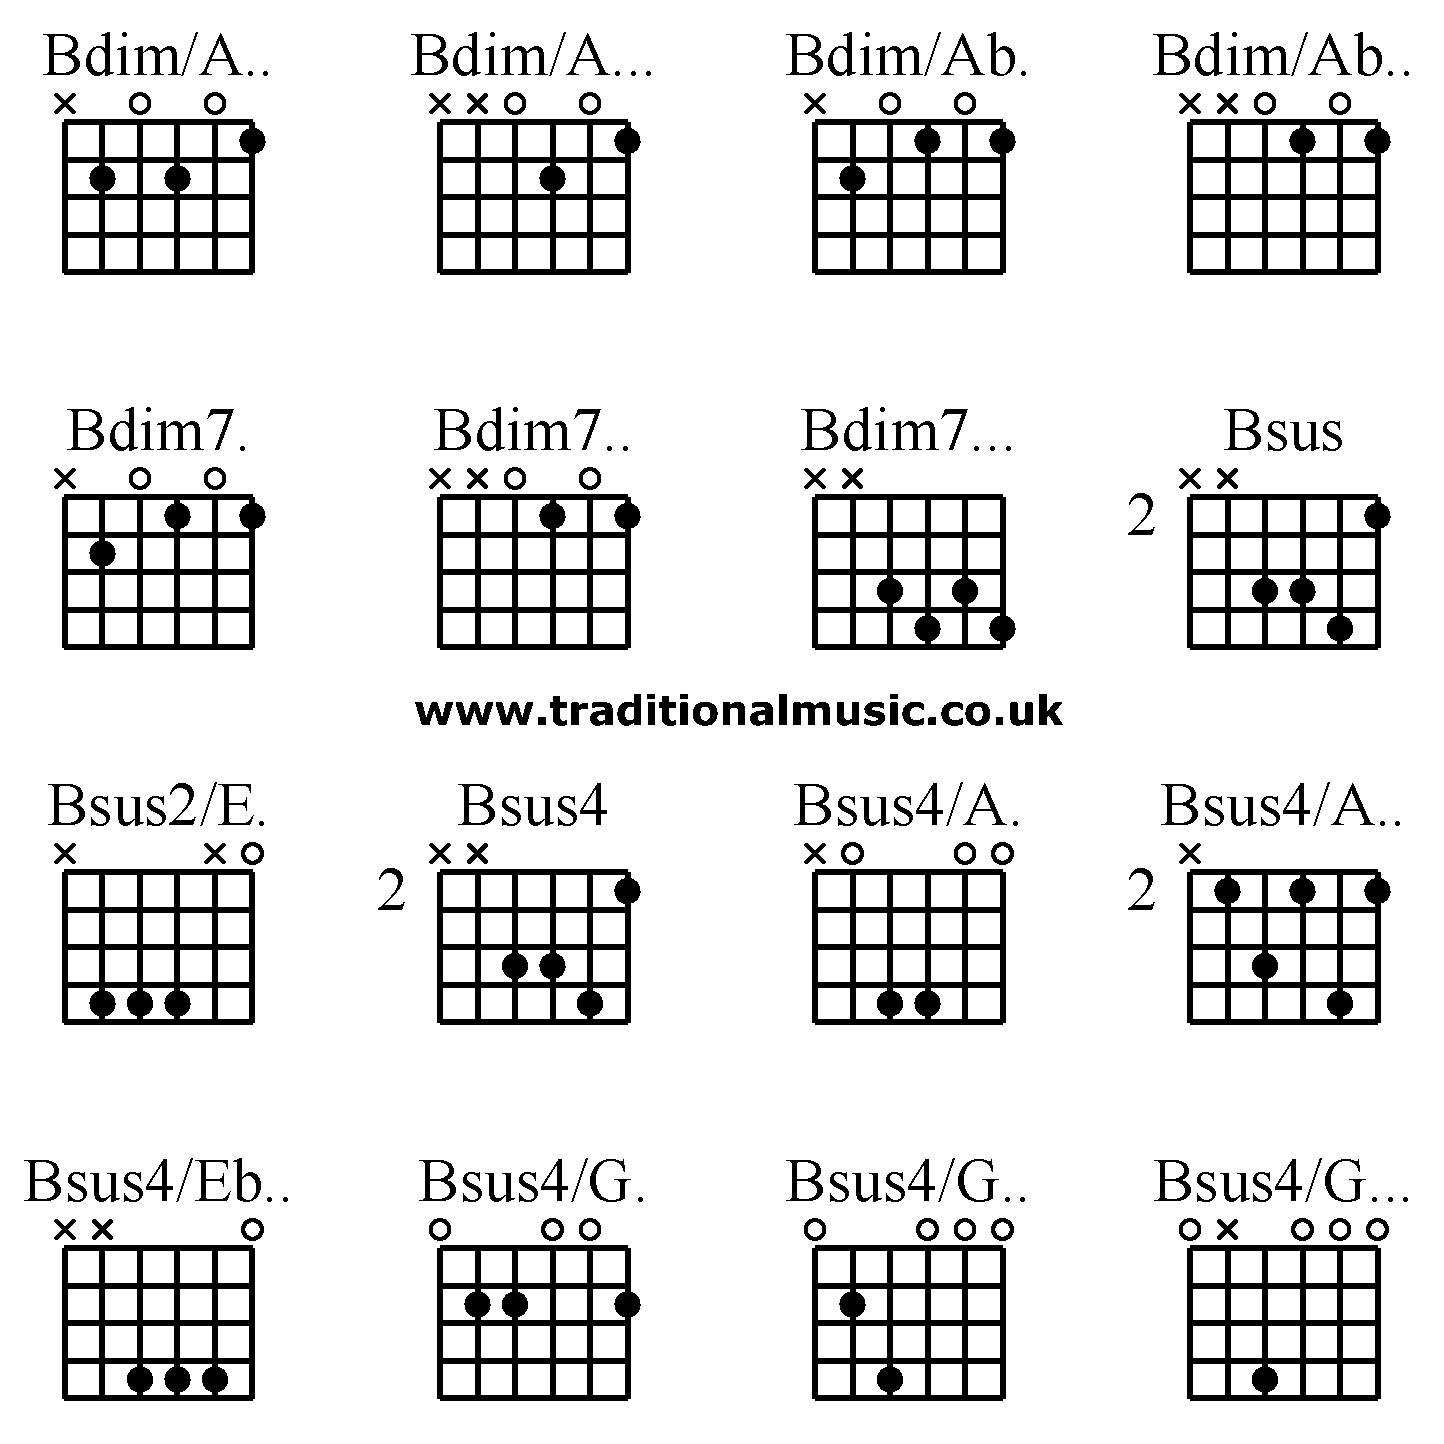 Advanced guitar chords:Bdim/A.. Bdim/A... Bdim/Ab. Bdim/Ab.. Bdim7. Bdim7.. Bdim7... Bsus, Bsus2/E. Bsus4 Bsus4/A. Bsus4/A.., Bsus4/Eb.. Bsus4/G. Bsus4/G.. Bsus4/G...